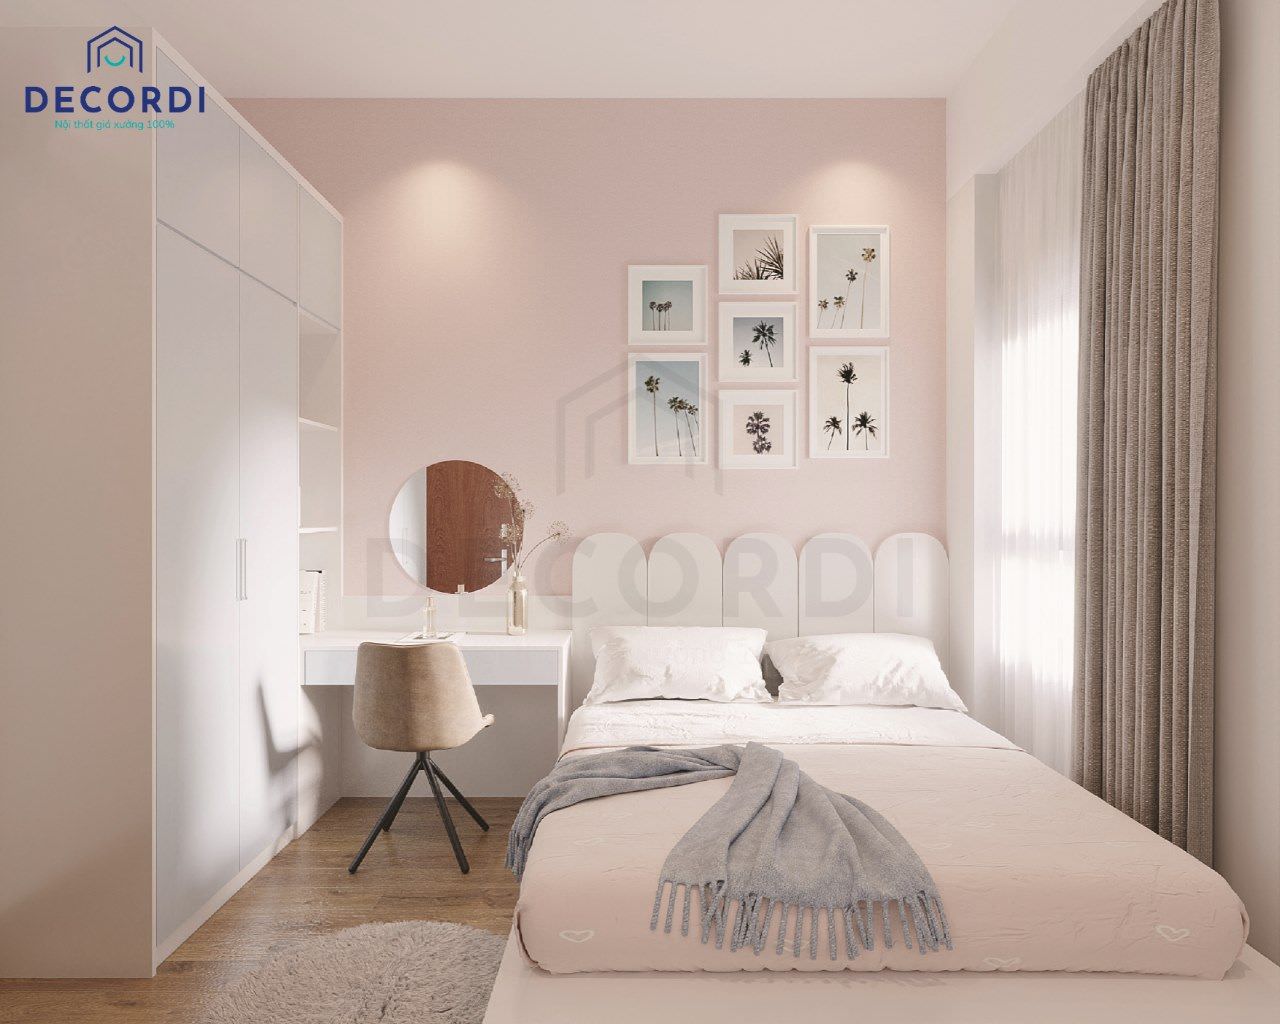 Thiết kế phòng ngủ tông màu hồng pastel nhẹ nhàng